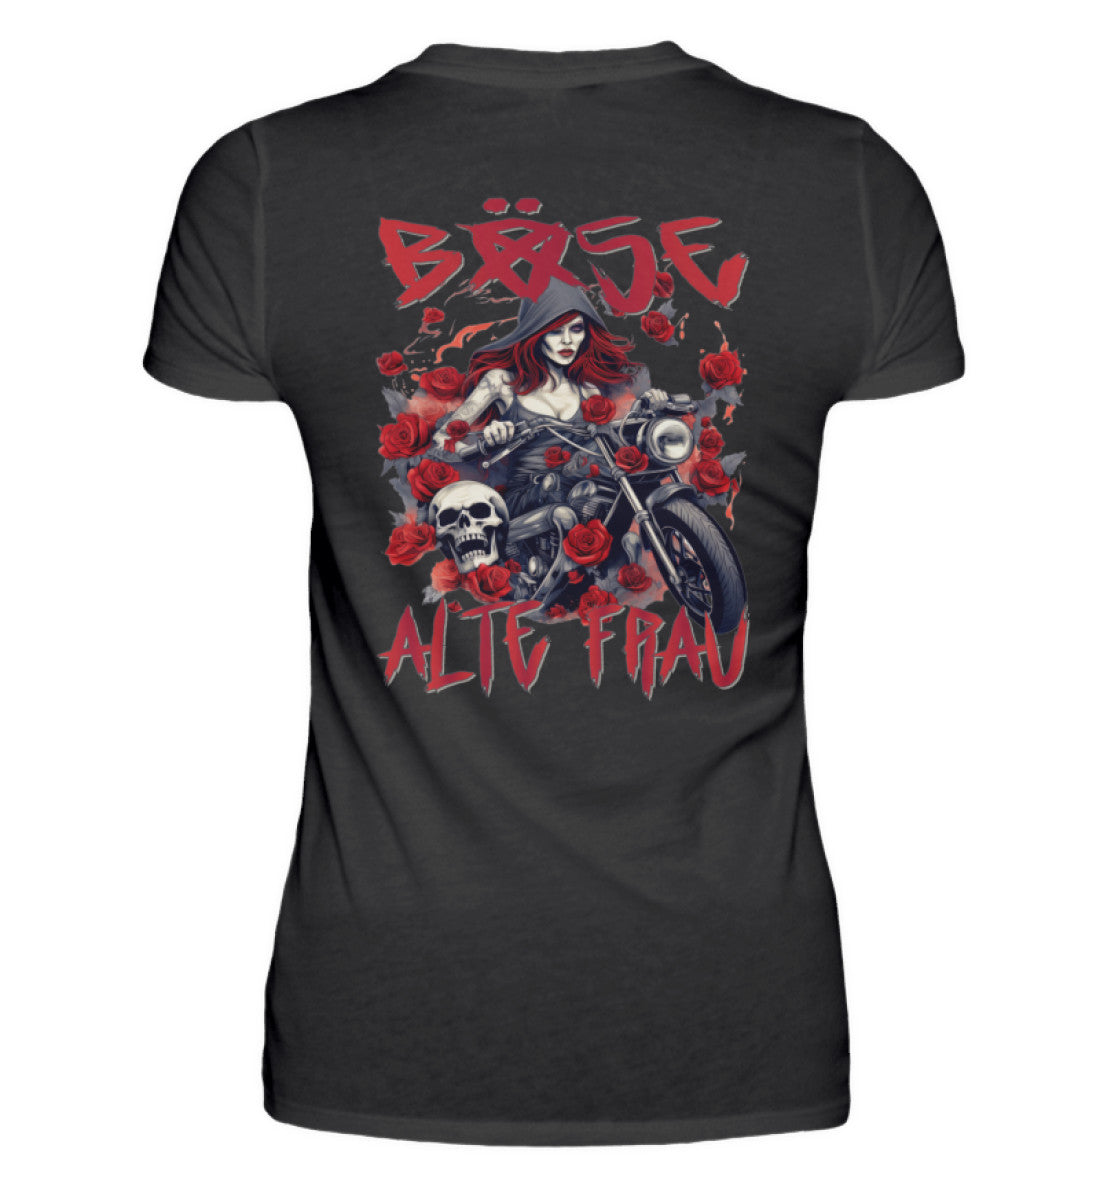 Ein Bikerin T-Shirt für Motorradfahrerinnen von Wingbikers mit dem Aufdruck, Böse Alte Frau, als Back Print, in schwarz.